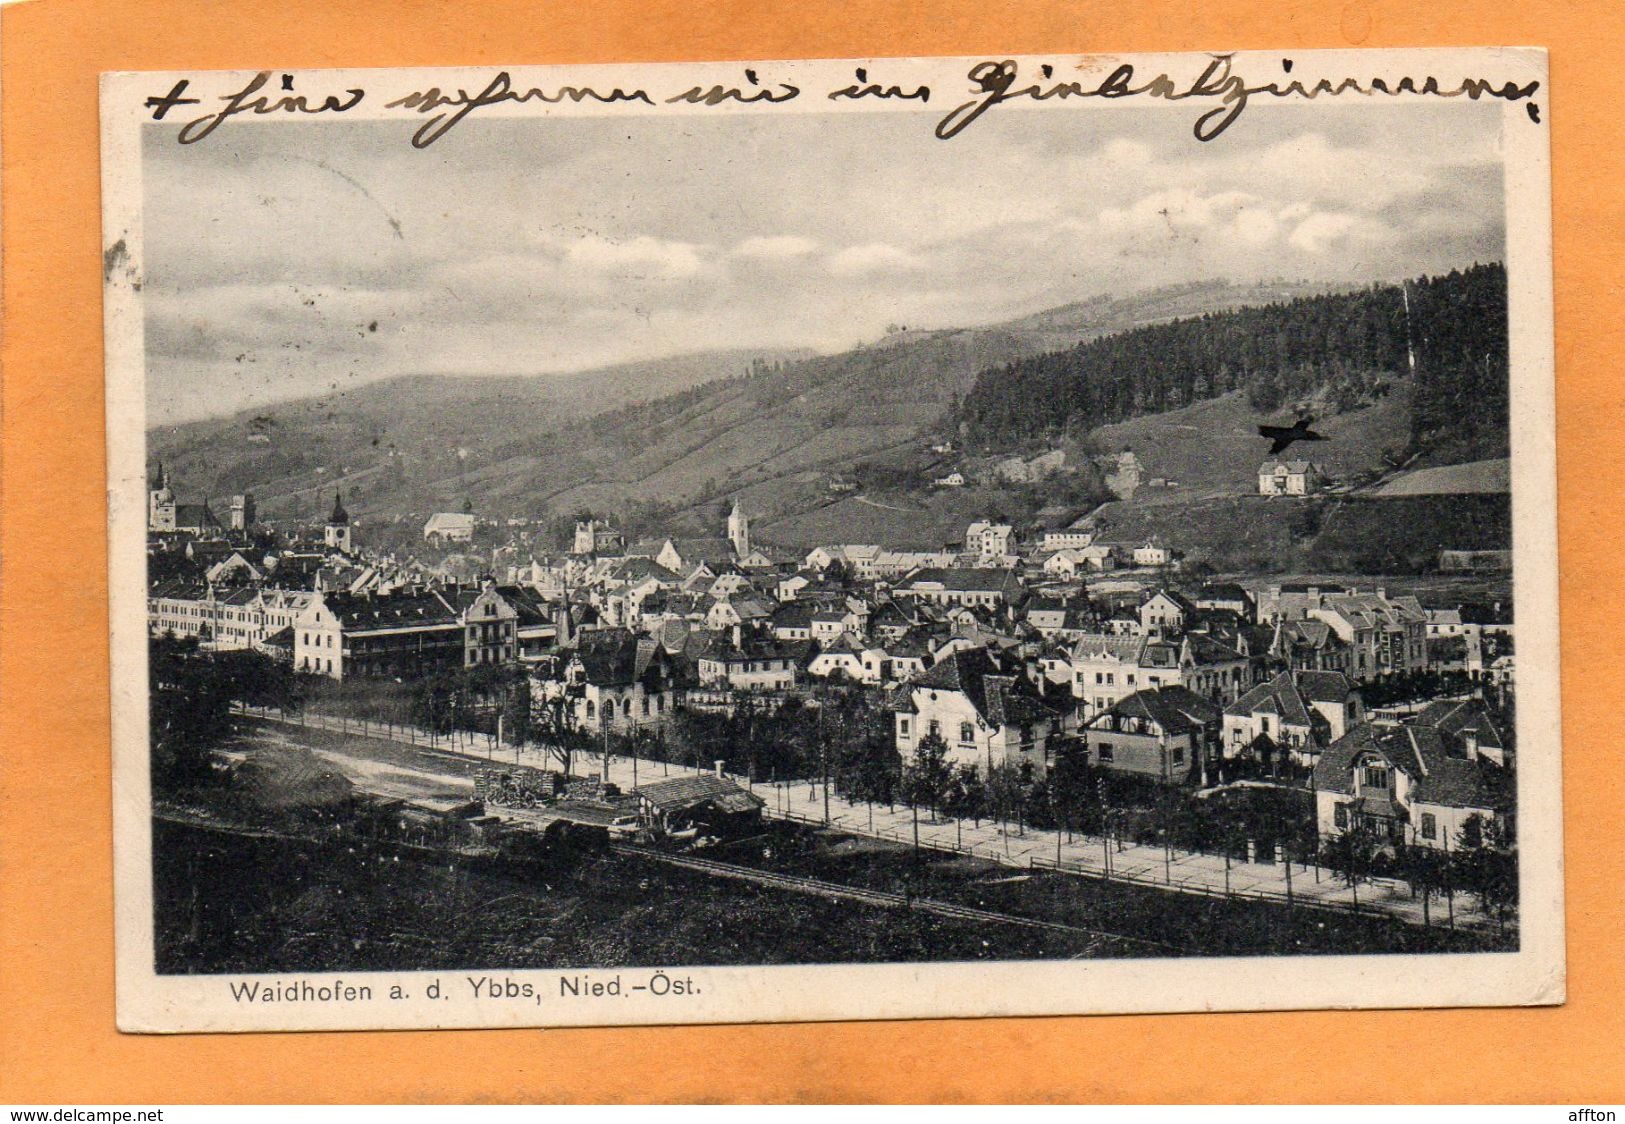 Waidhofen An Der Ybbs 1909 Postcard - Waidhofen An Der Ybbs